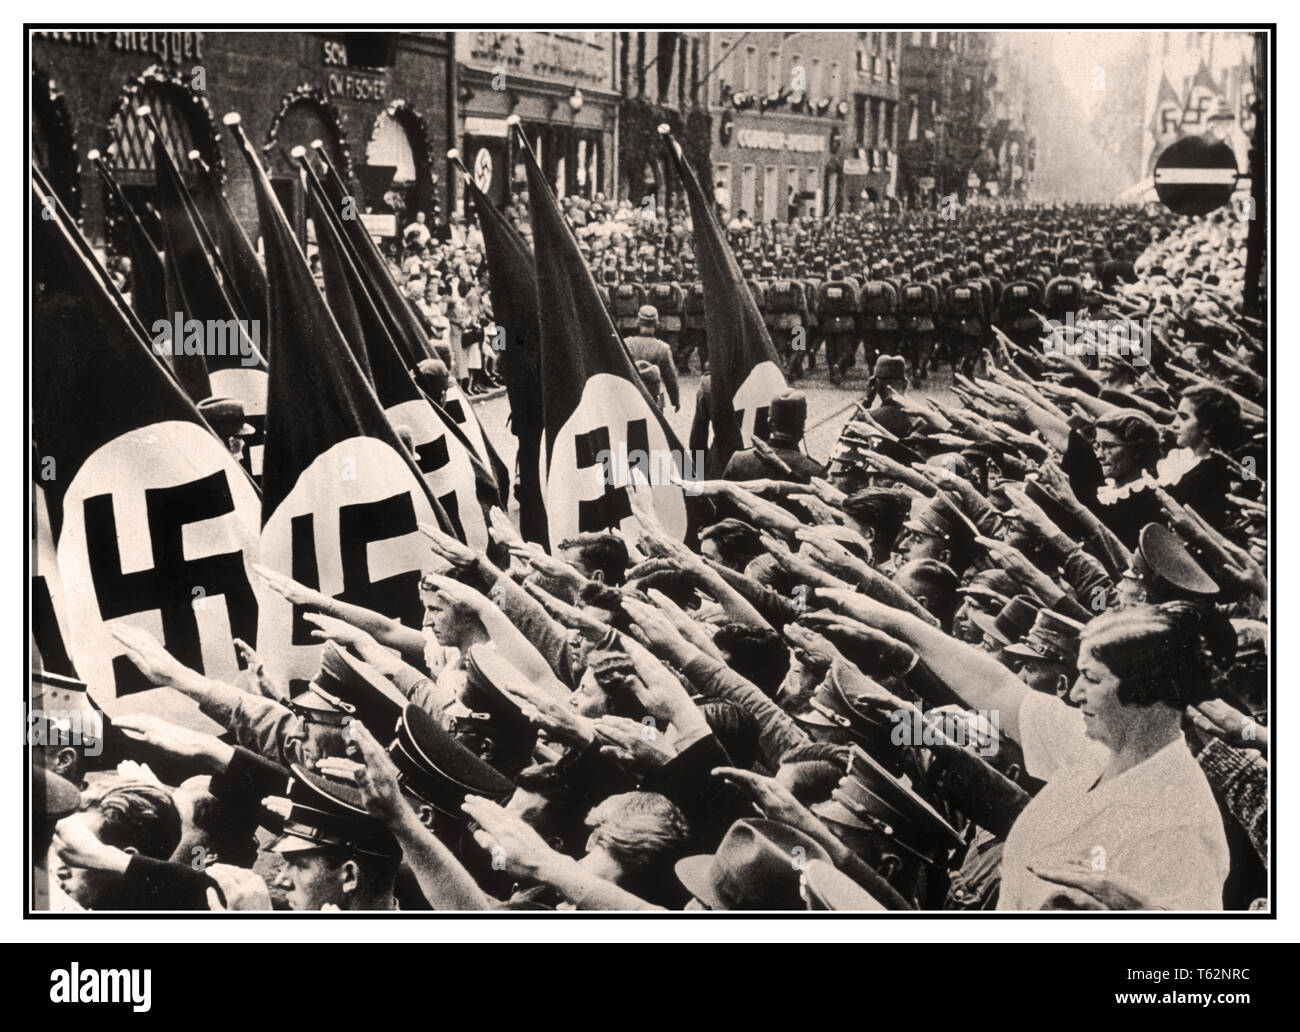 HEIL HITLER NUREMBERG drapeaux à croix gammée salue la foule dans la rue de Nuremberg Allemagne nazie, Heil Hitler salute Nazi comme Corps du travail passé mars portant des drapeaux à croix gammée. Célébration du défilé Parti national socialiste et réunion à Nuremberg, Allemagne 1937 Banque D'Images